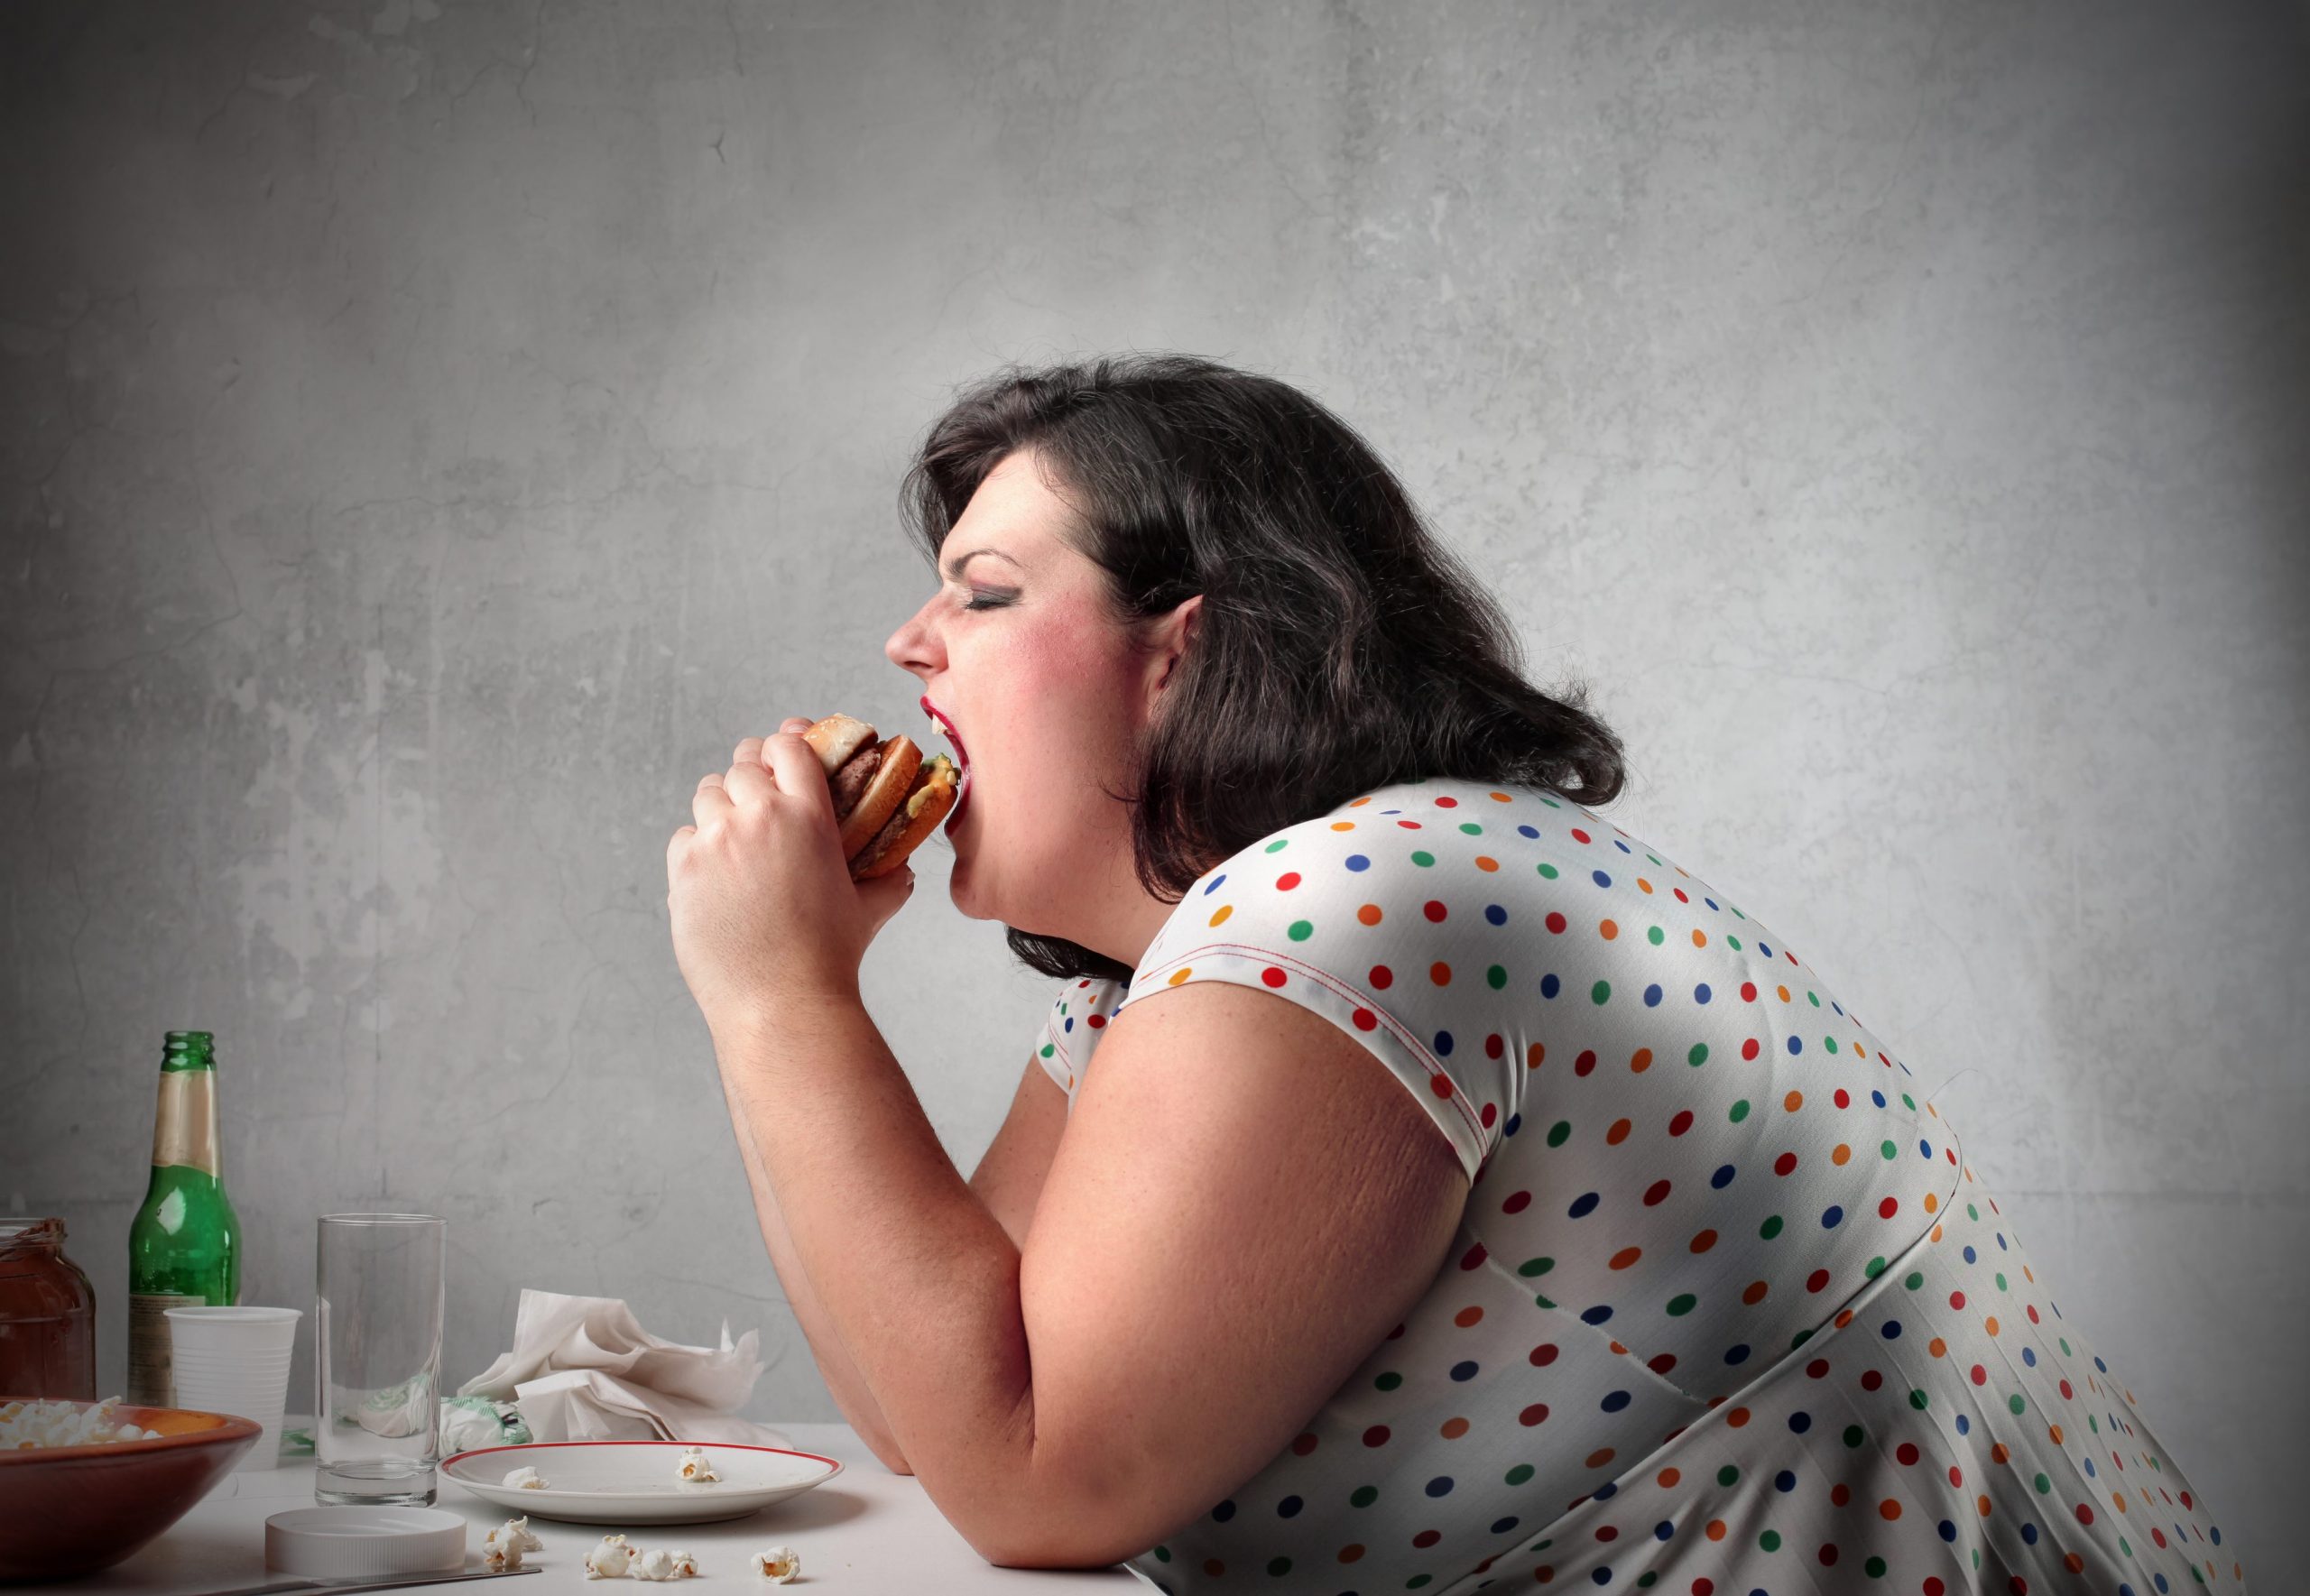 Challenge per combattere l’obesità: dal RAK Hospital degli Emirati Arabi la sfida dello stile di vita sano